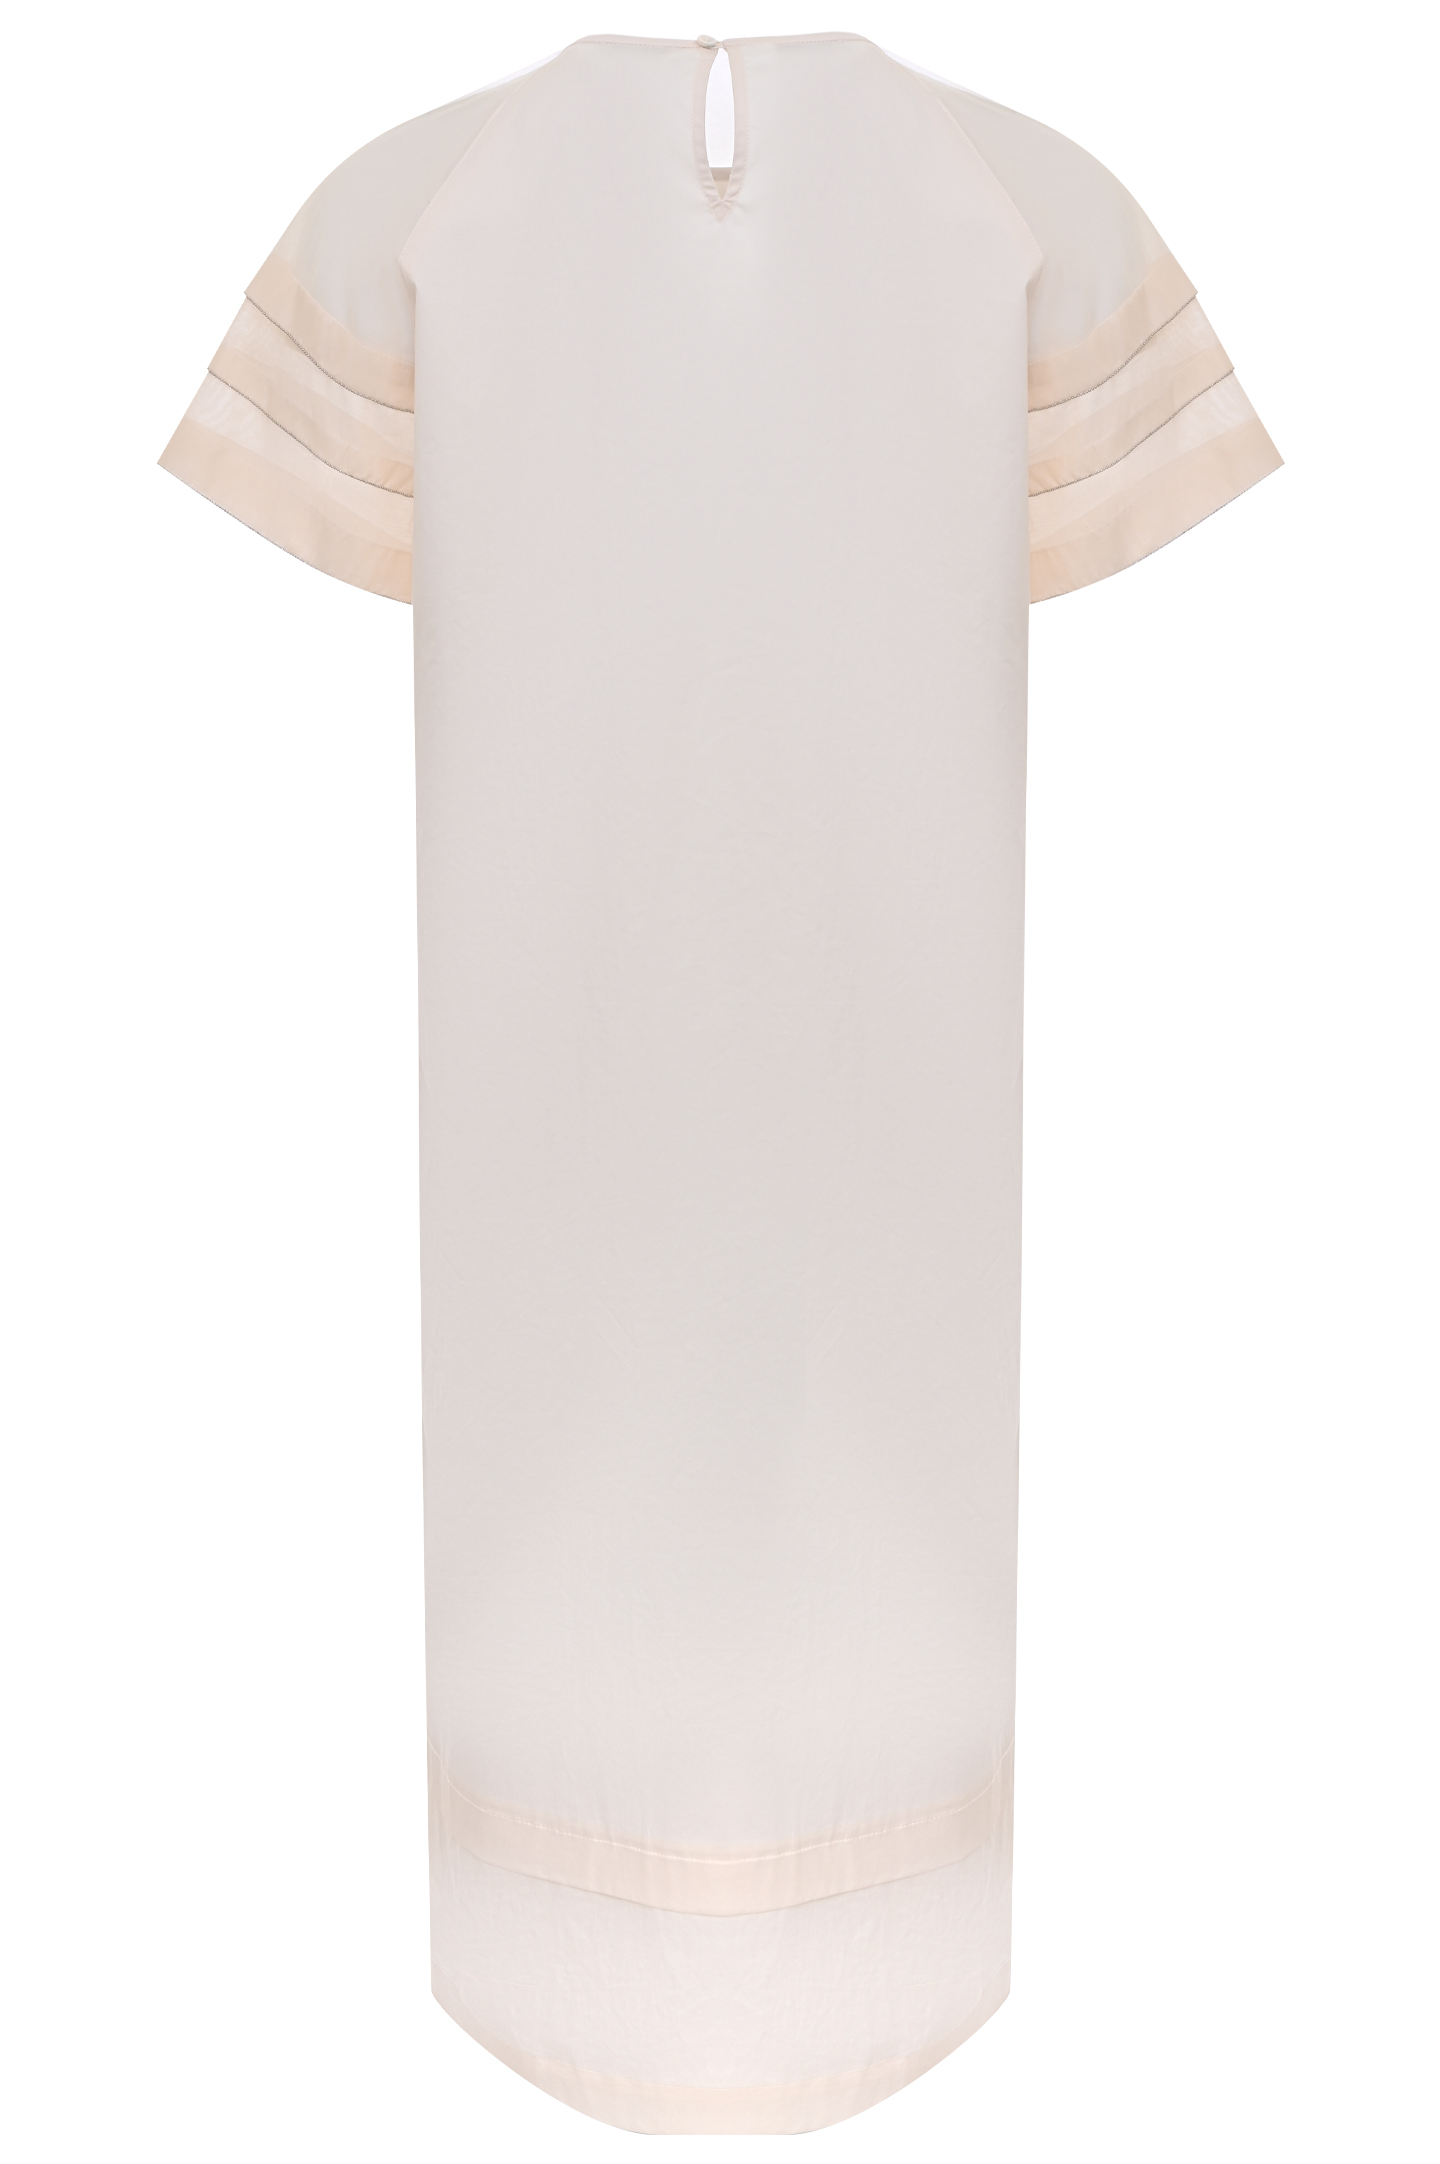 Платье PESERICO S02700 1979A, цвет: Молочный, Женский